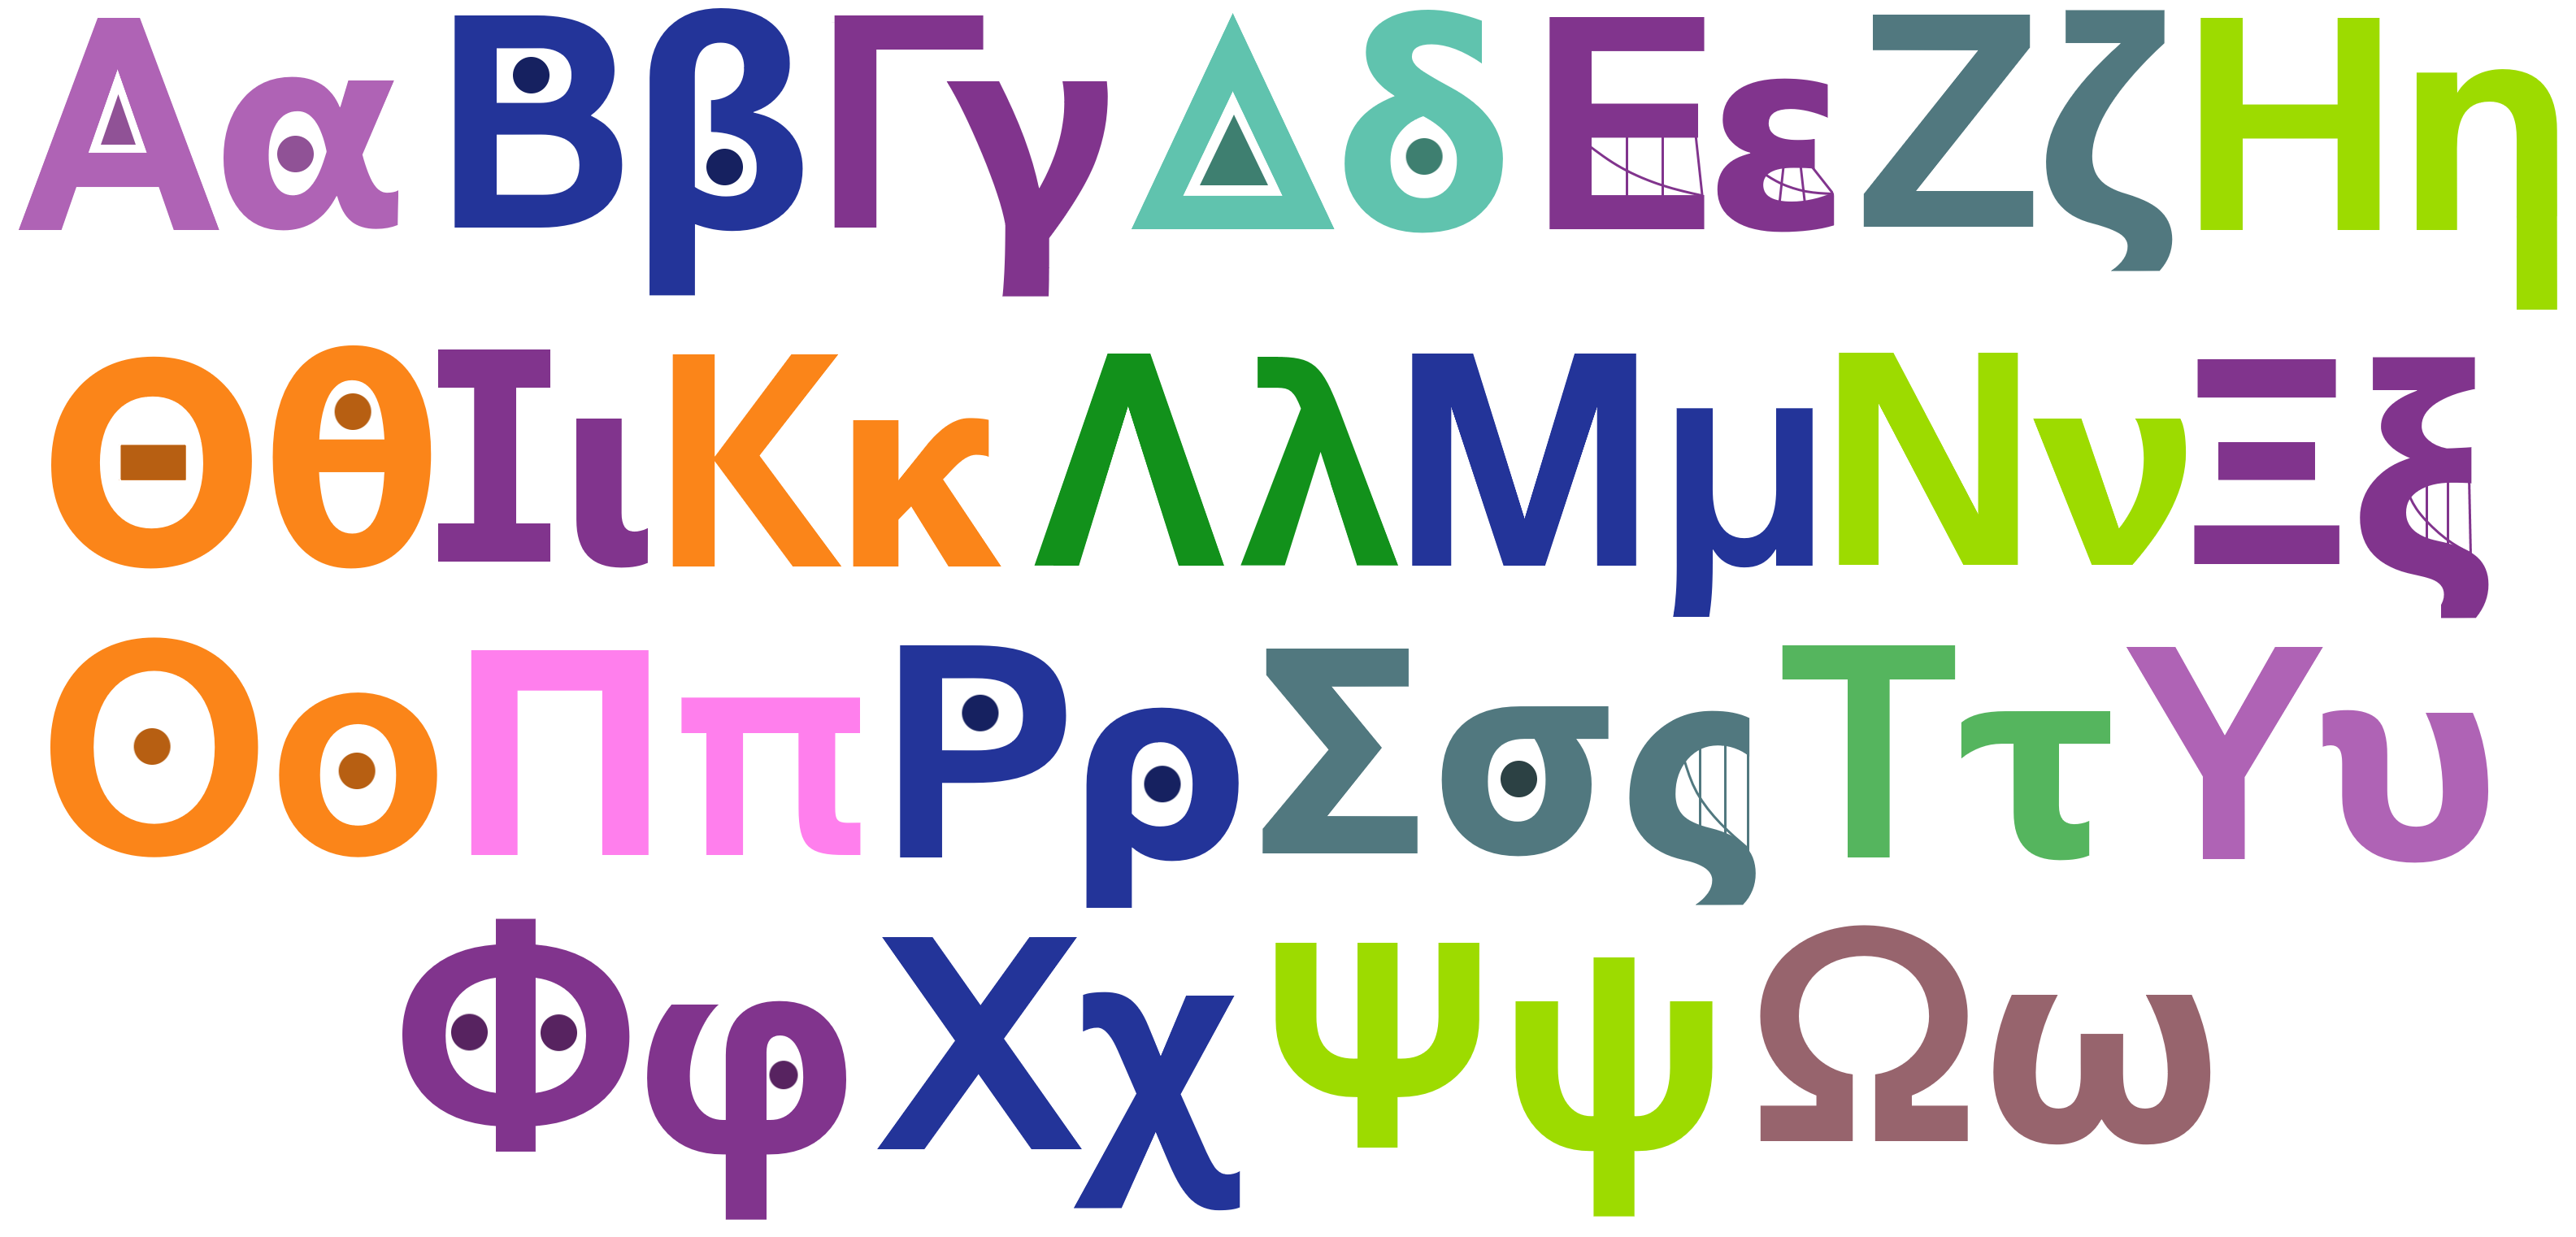 IHHOS' TVOkids Cast - Greek Alphabet by OreoAndEeyore on DeviantArt